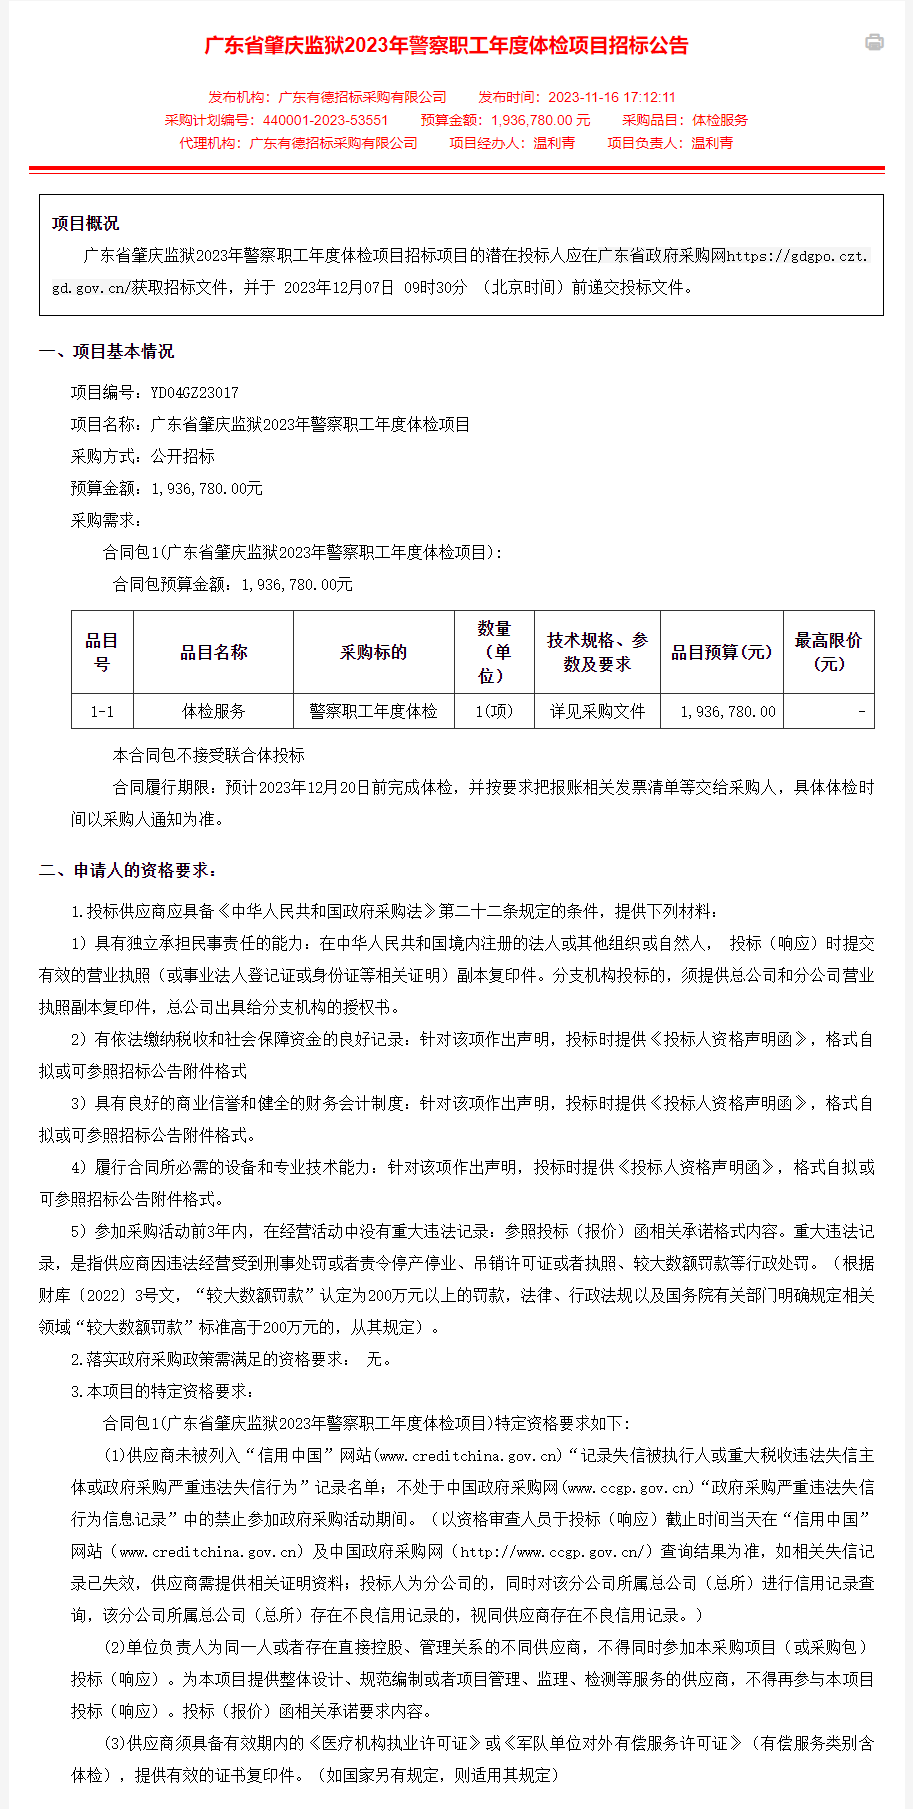 广东省肇庆监狱2023年警察职工年度体检项目招标公告1.png